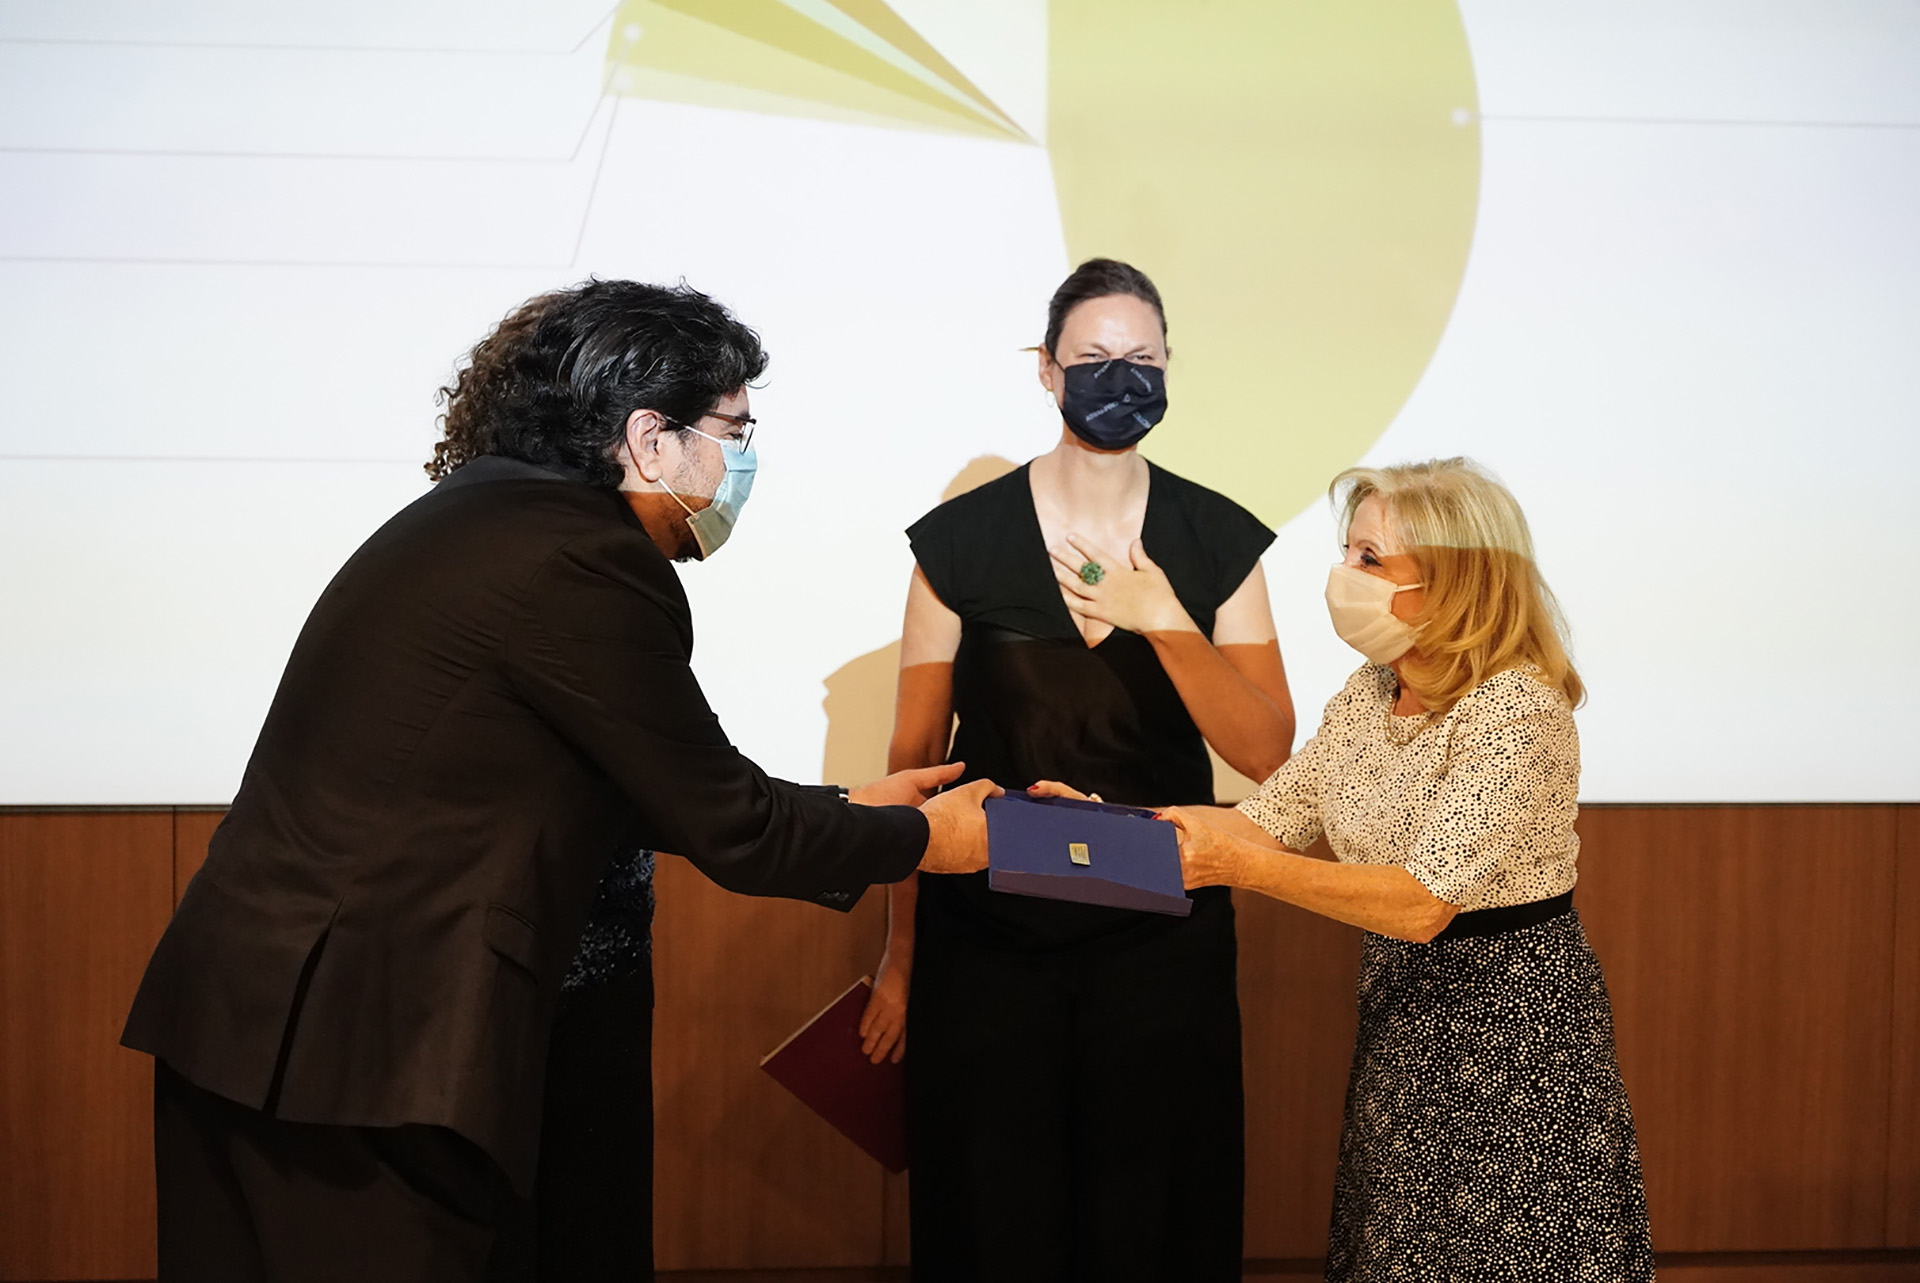 El Premio DAIA a la promoción del Arte y la Cultura fue para Lírica Solidaria Argentina, un voluntariado integrado por cantantes líricos que nació a los pocos meses del inicio de la pandemia, con el fin de amortiguar el severo impacto que la falta de actividad produjo en el sector artístico